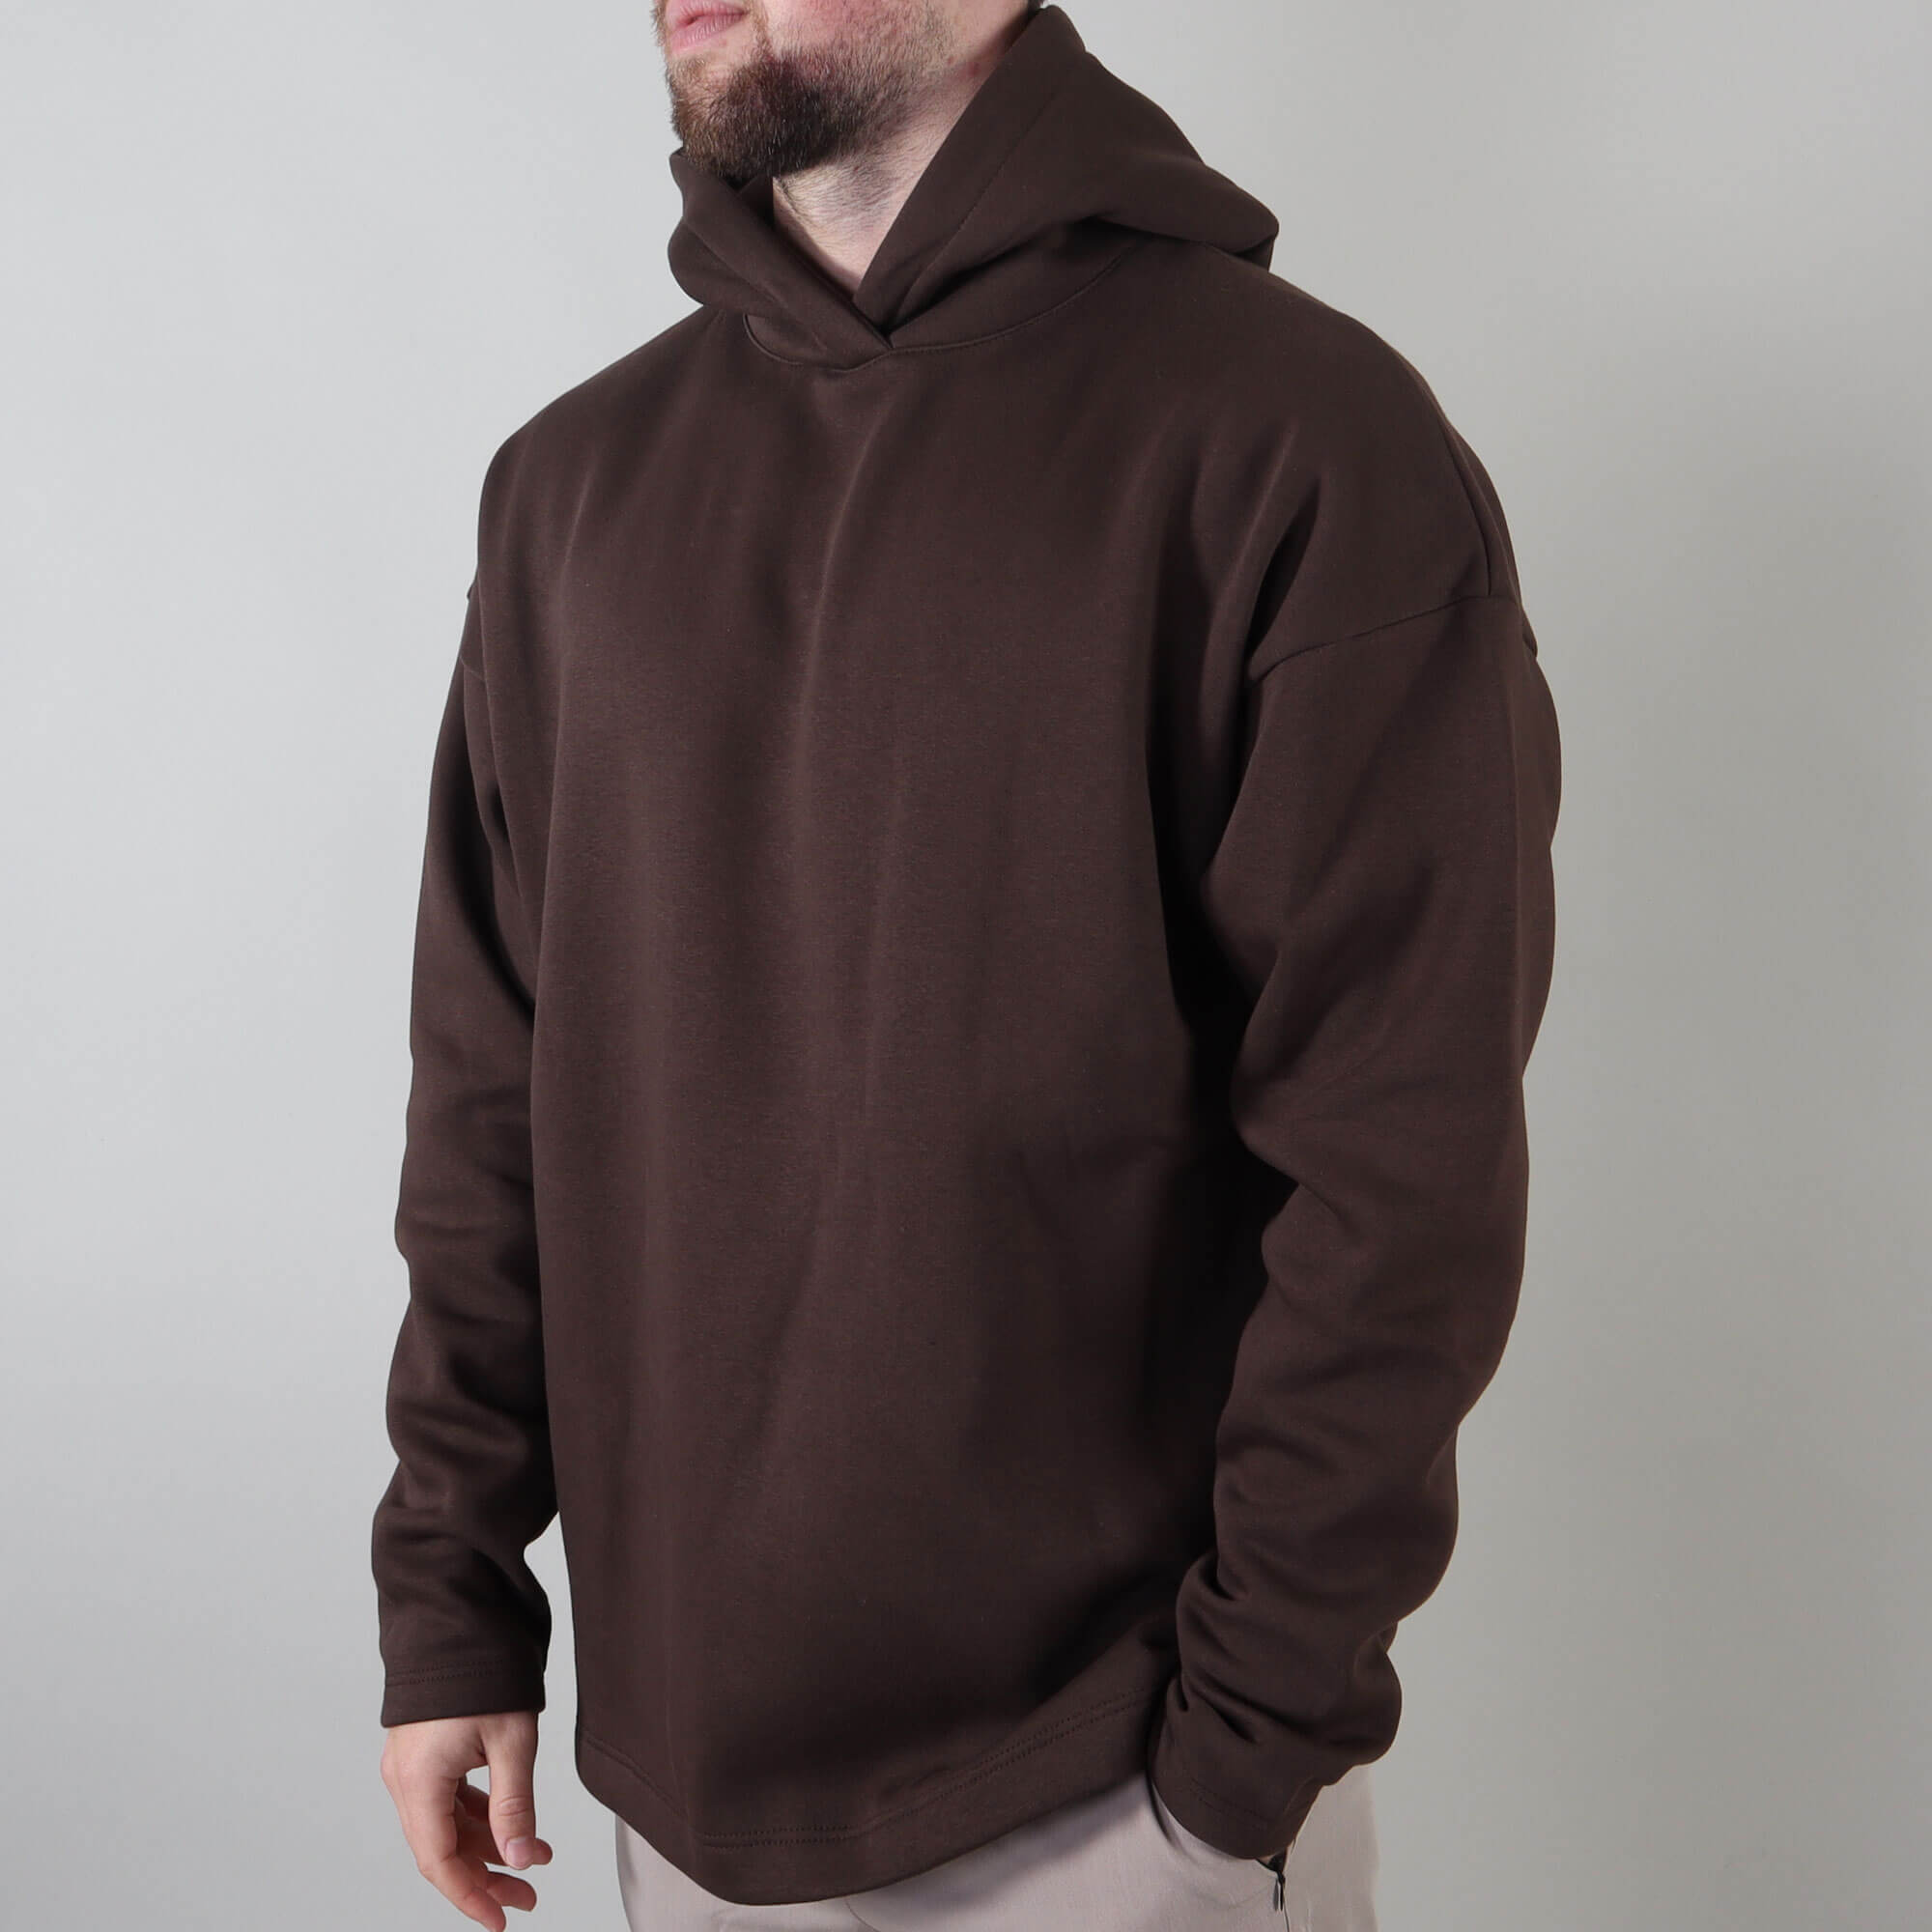 PRJCT hoodie brown